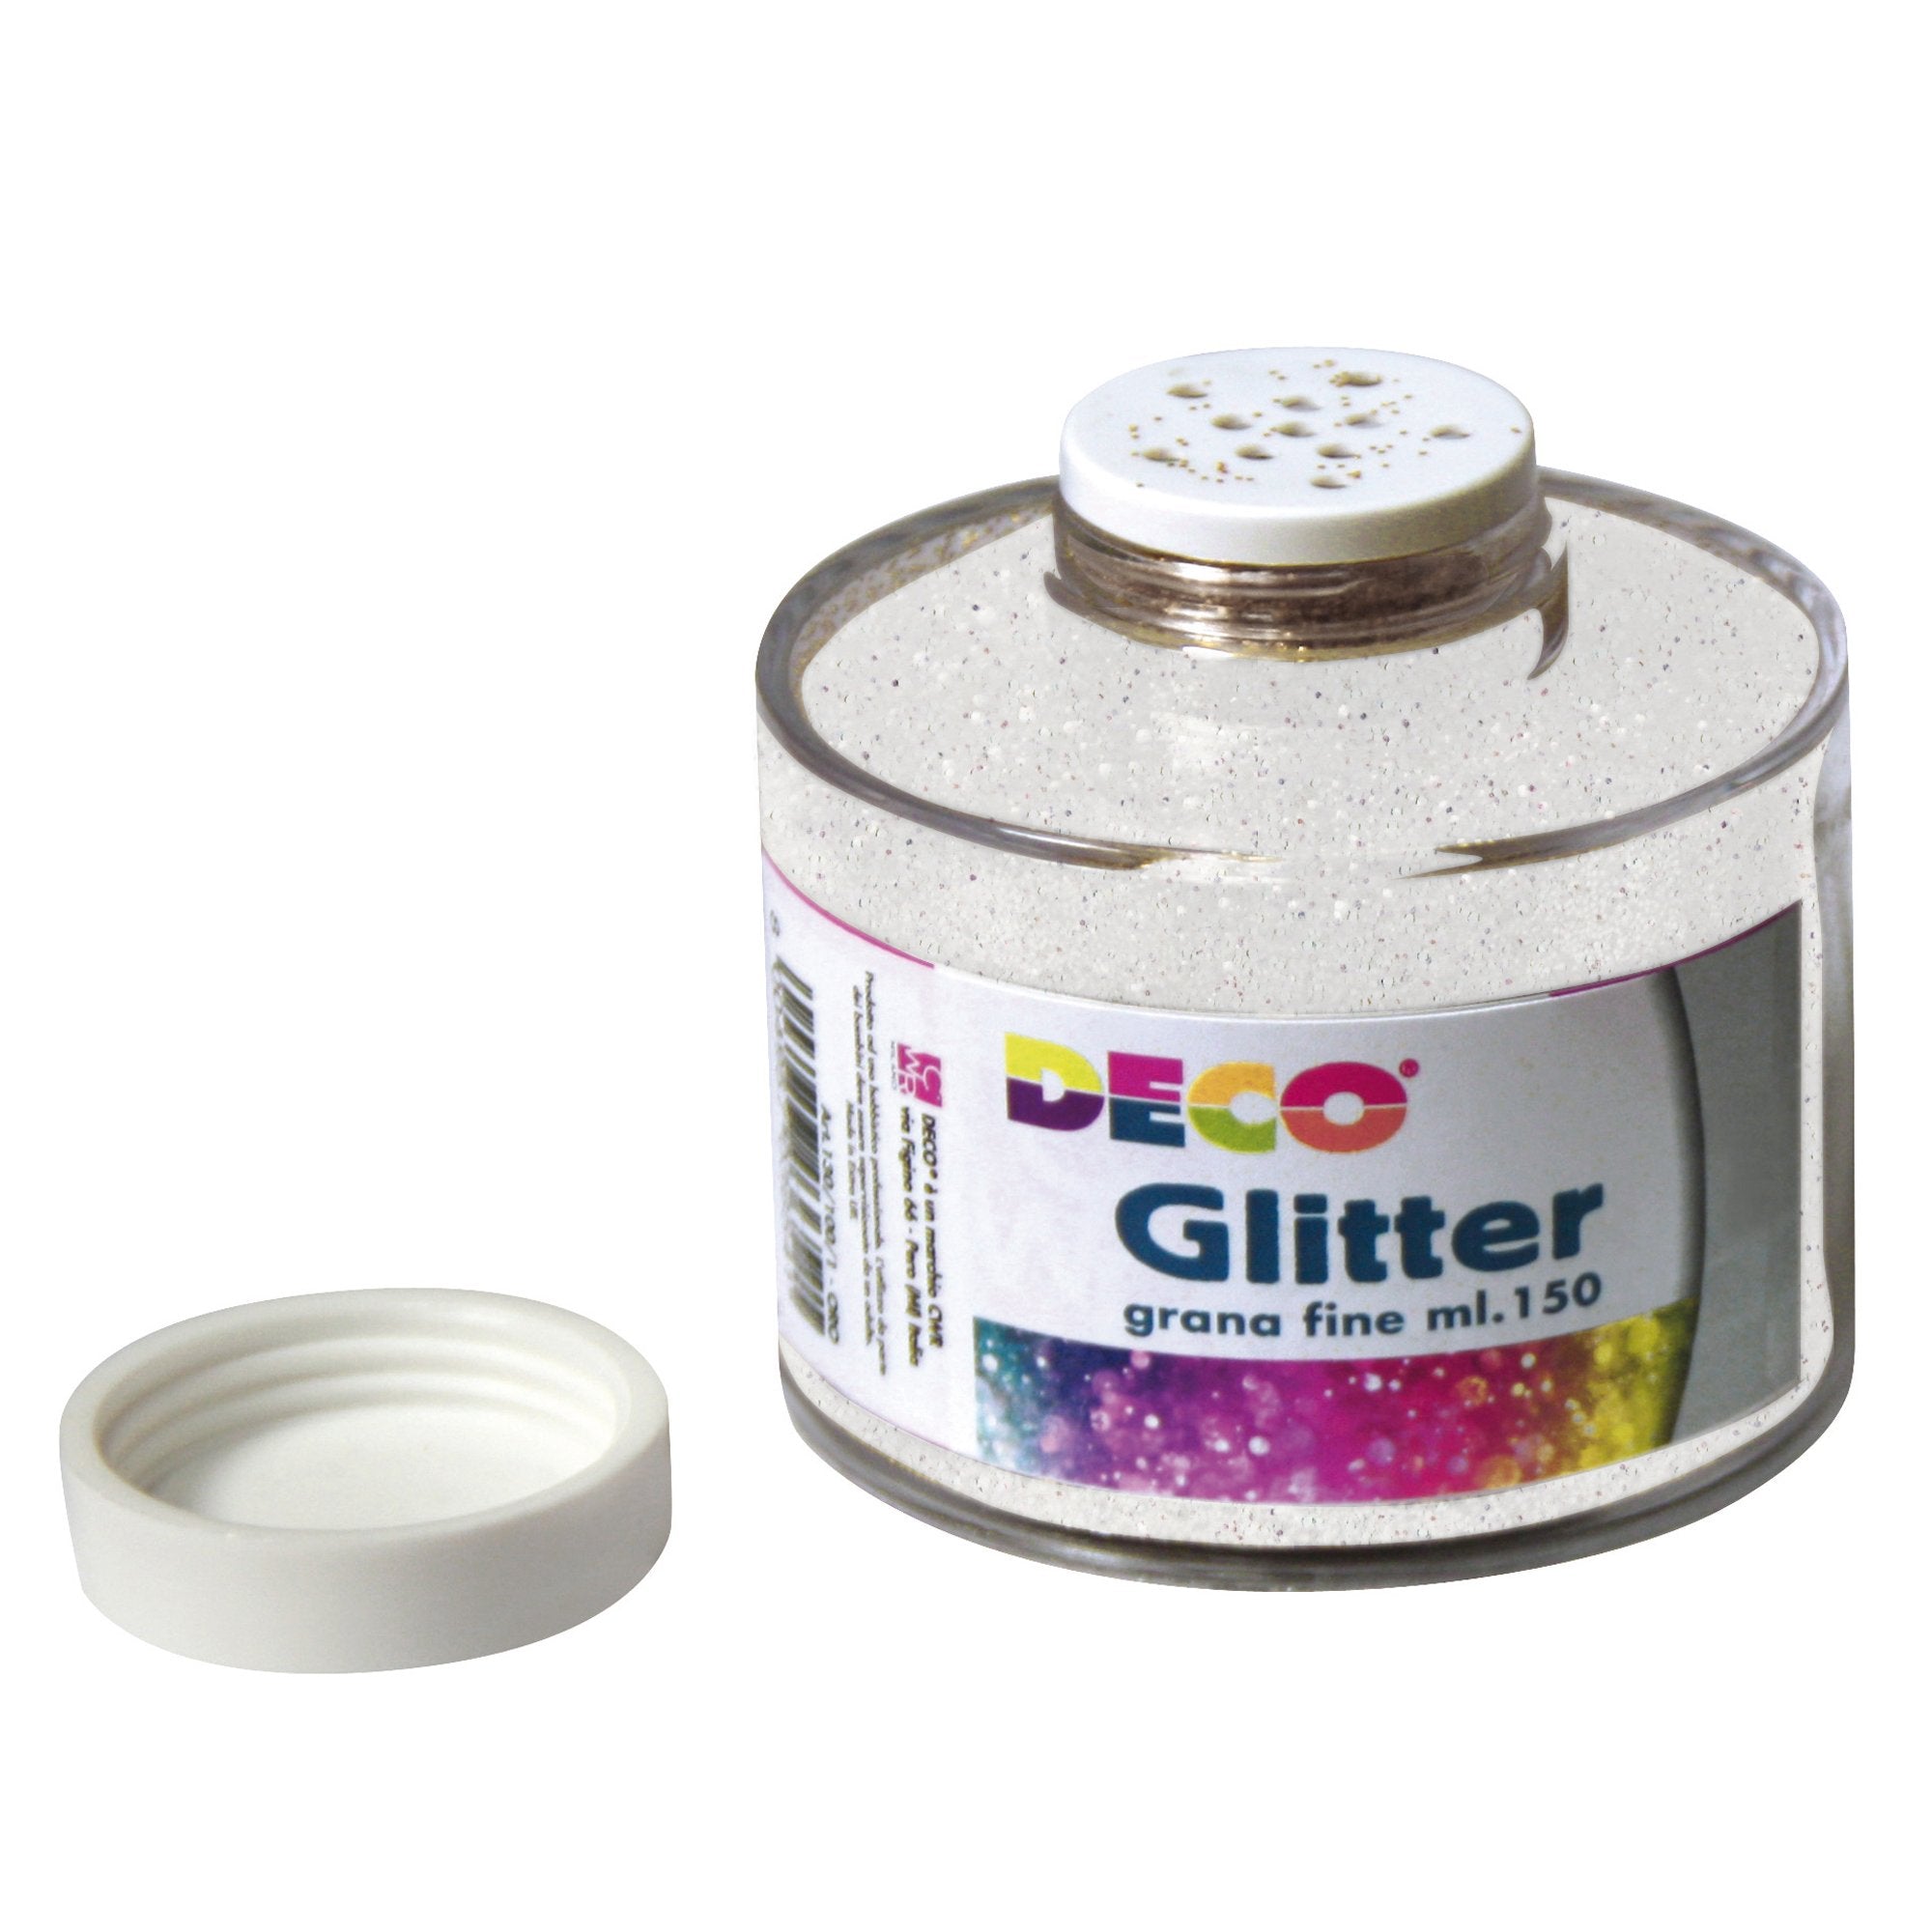 deco-barattolo-glitter-grana-fine-ml150-bianco-iride-art-130-100